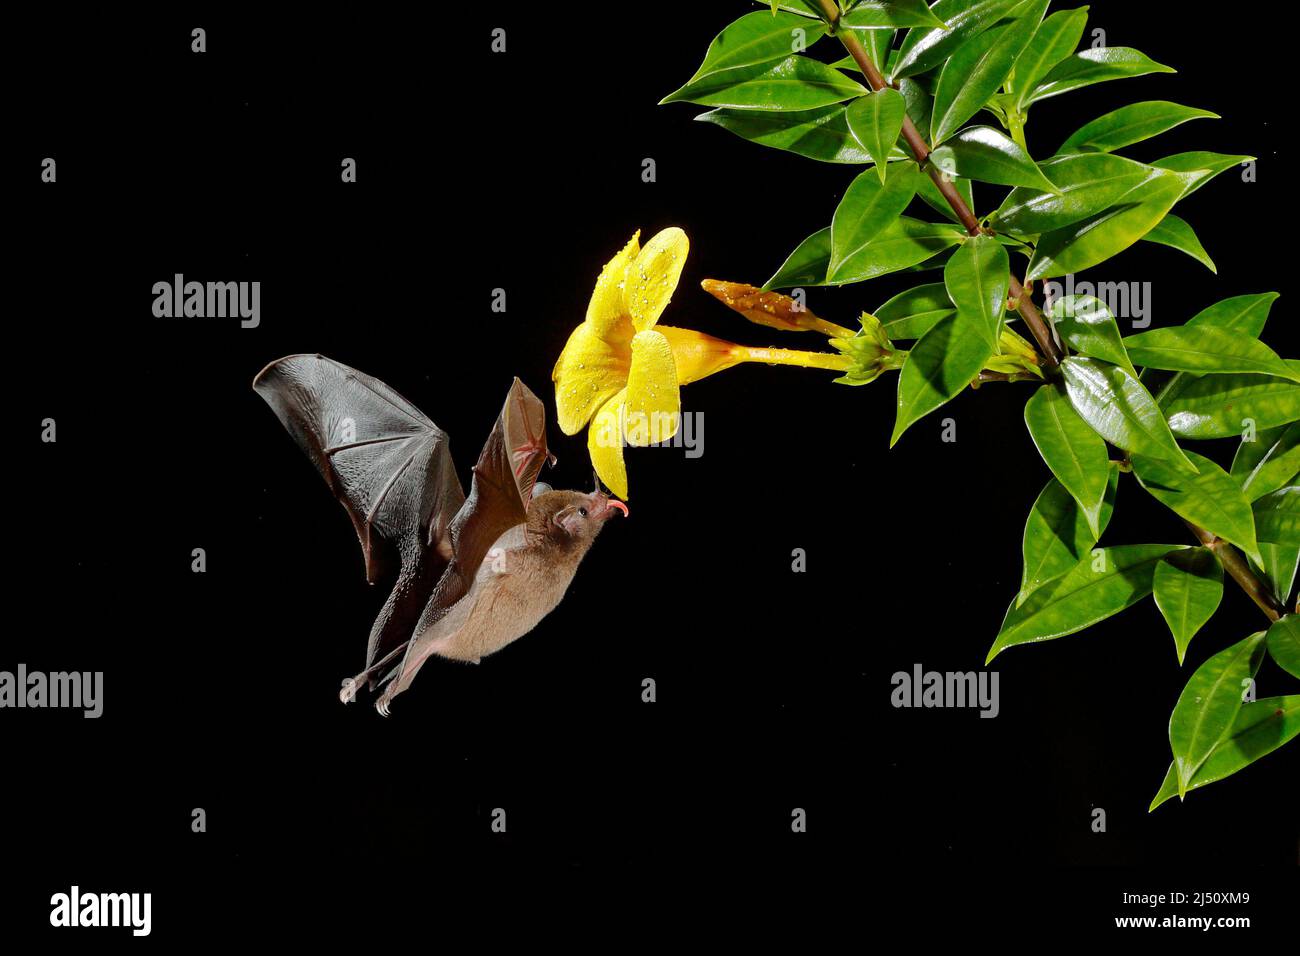 Chauve-souris à nectar orange, Lonchophylla robusta, chauve-souris volante la nuit sombre. Animal nocturne en mouche avec fleur jaune. Scène d'action de la faune tropicale Banque D'Images